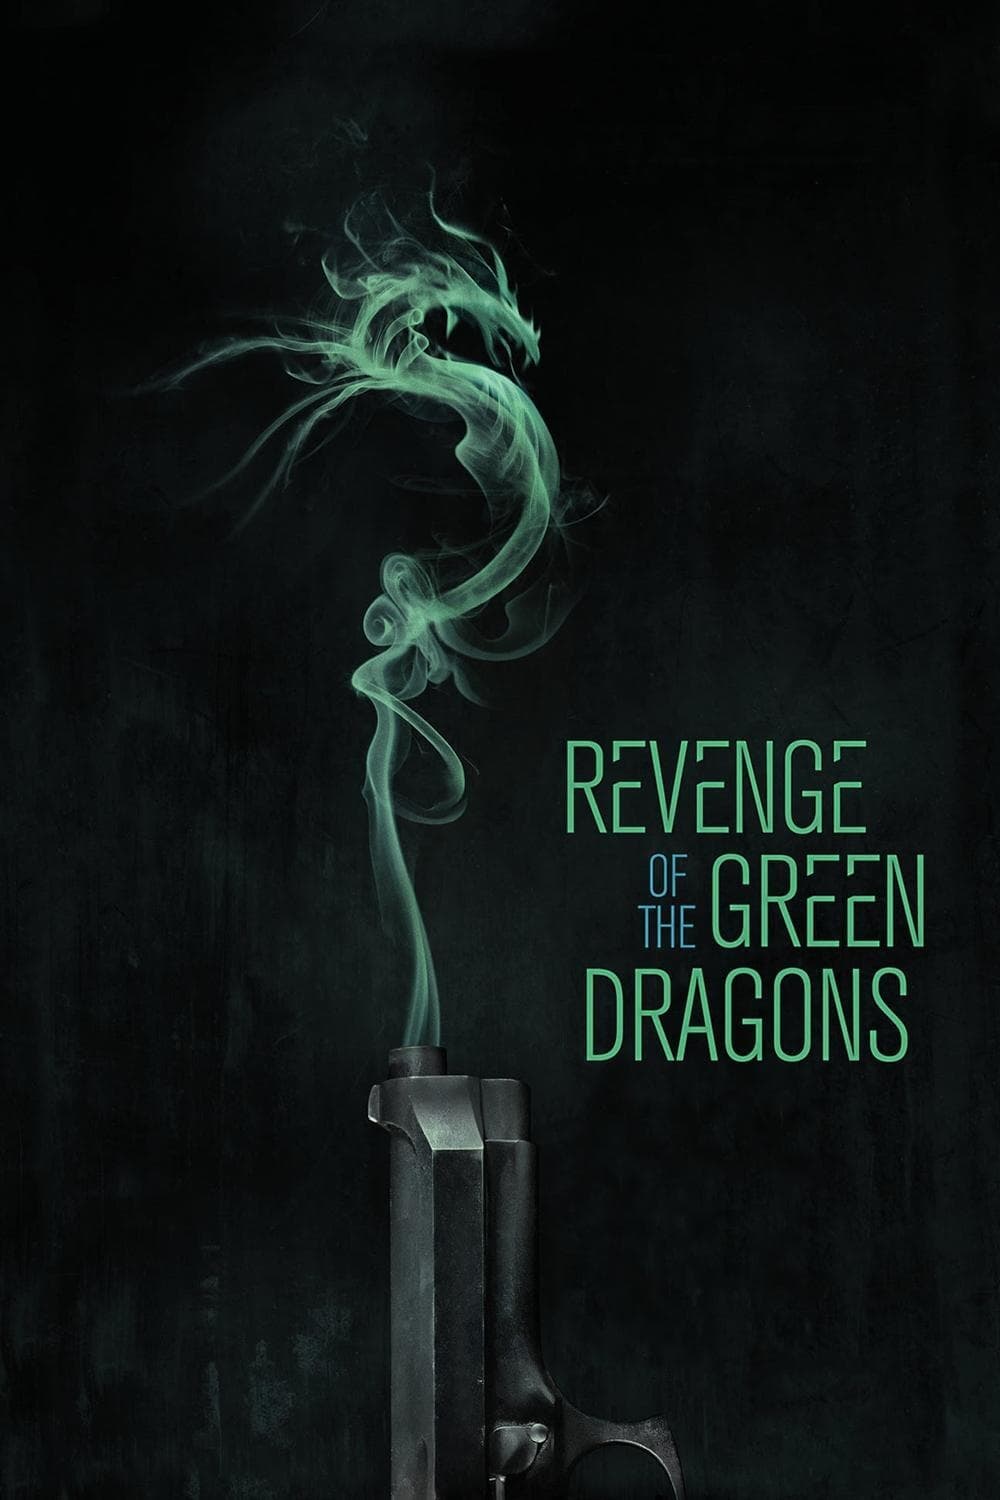 La Revanche des dragons verts